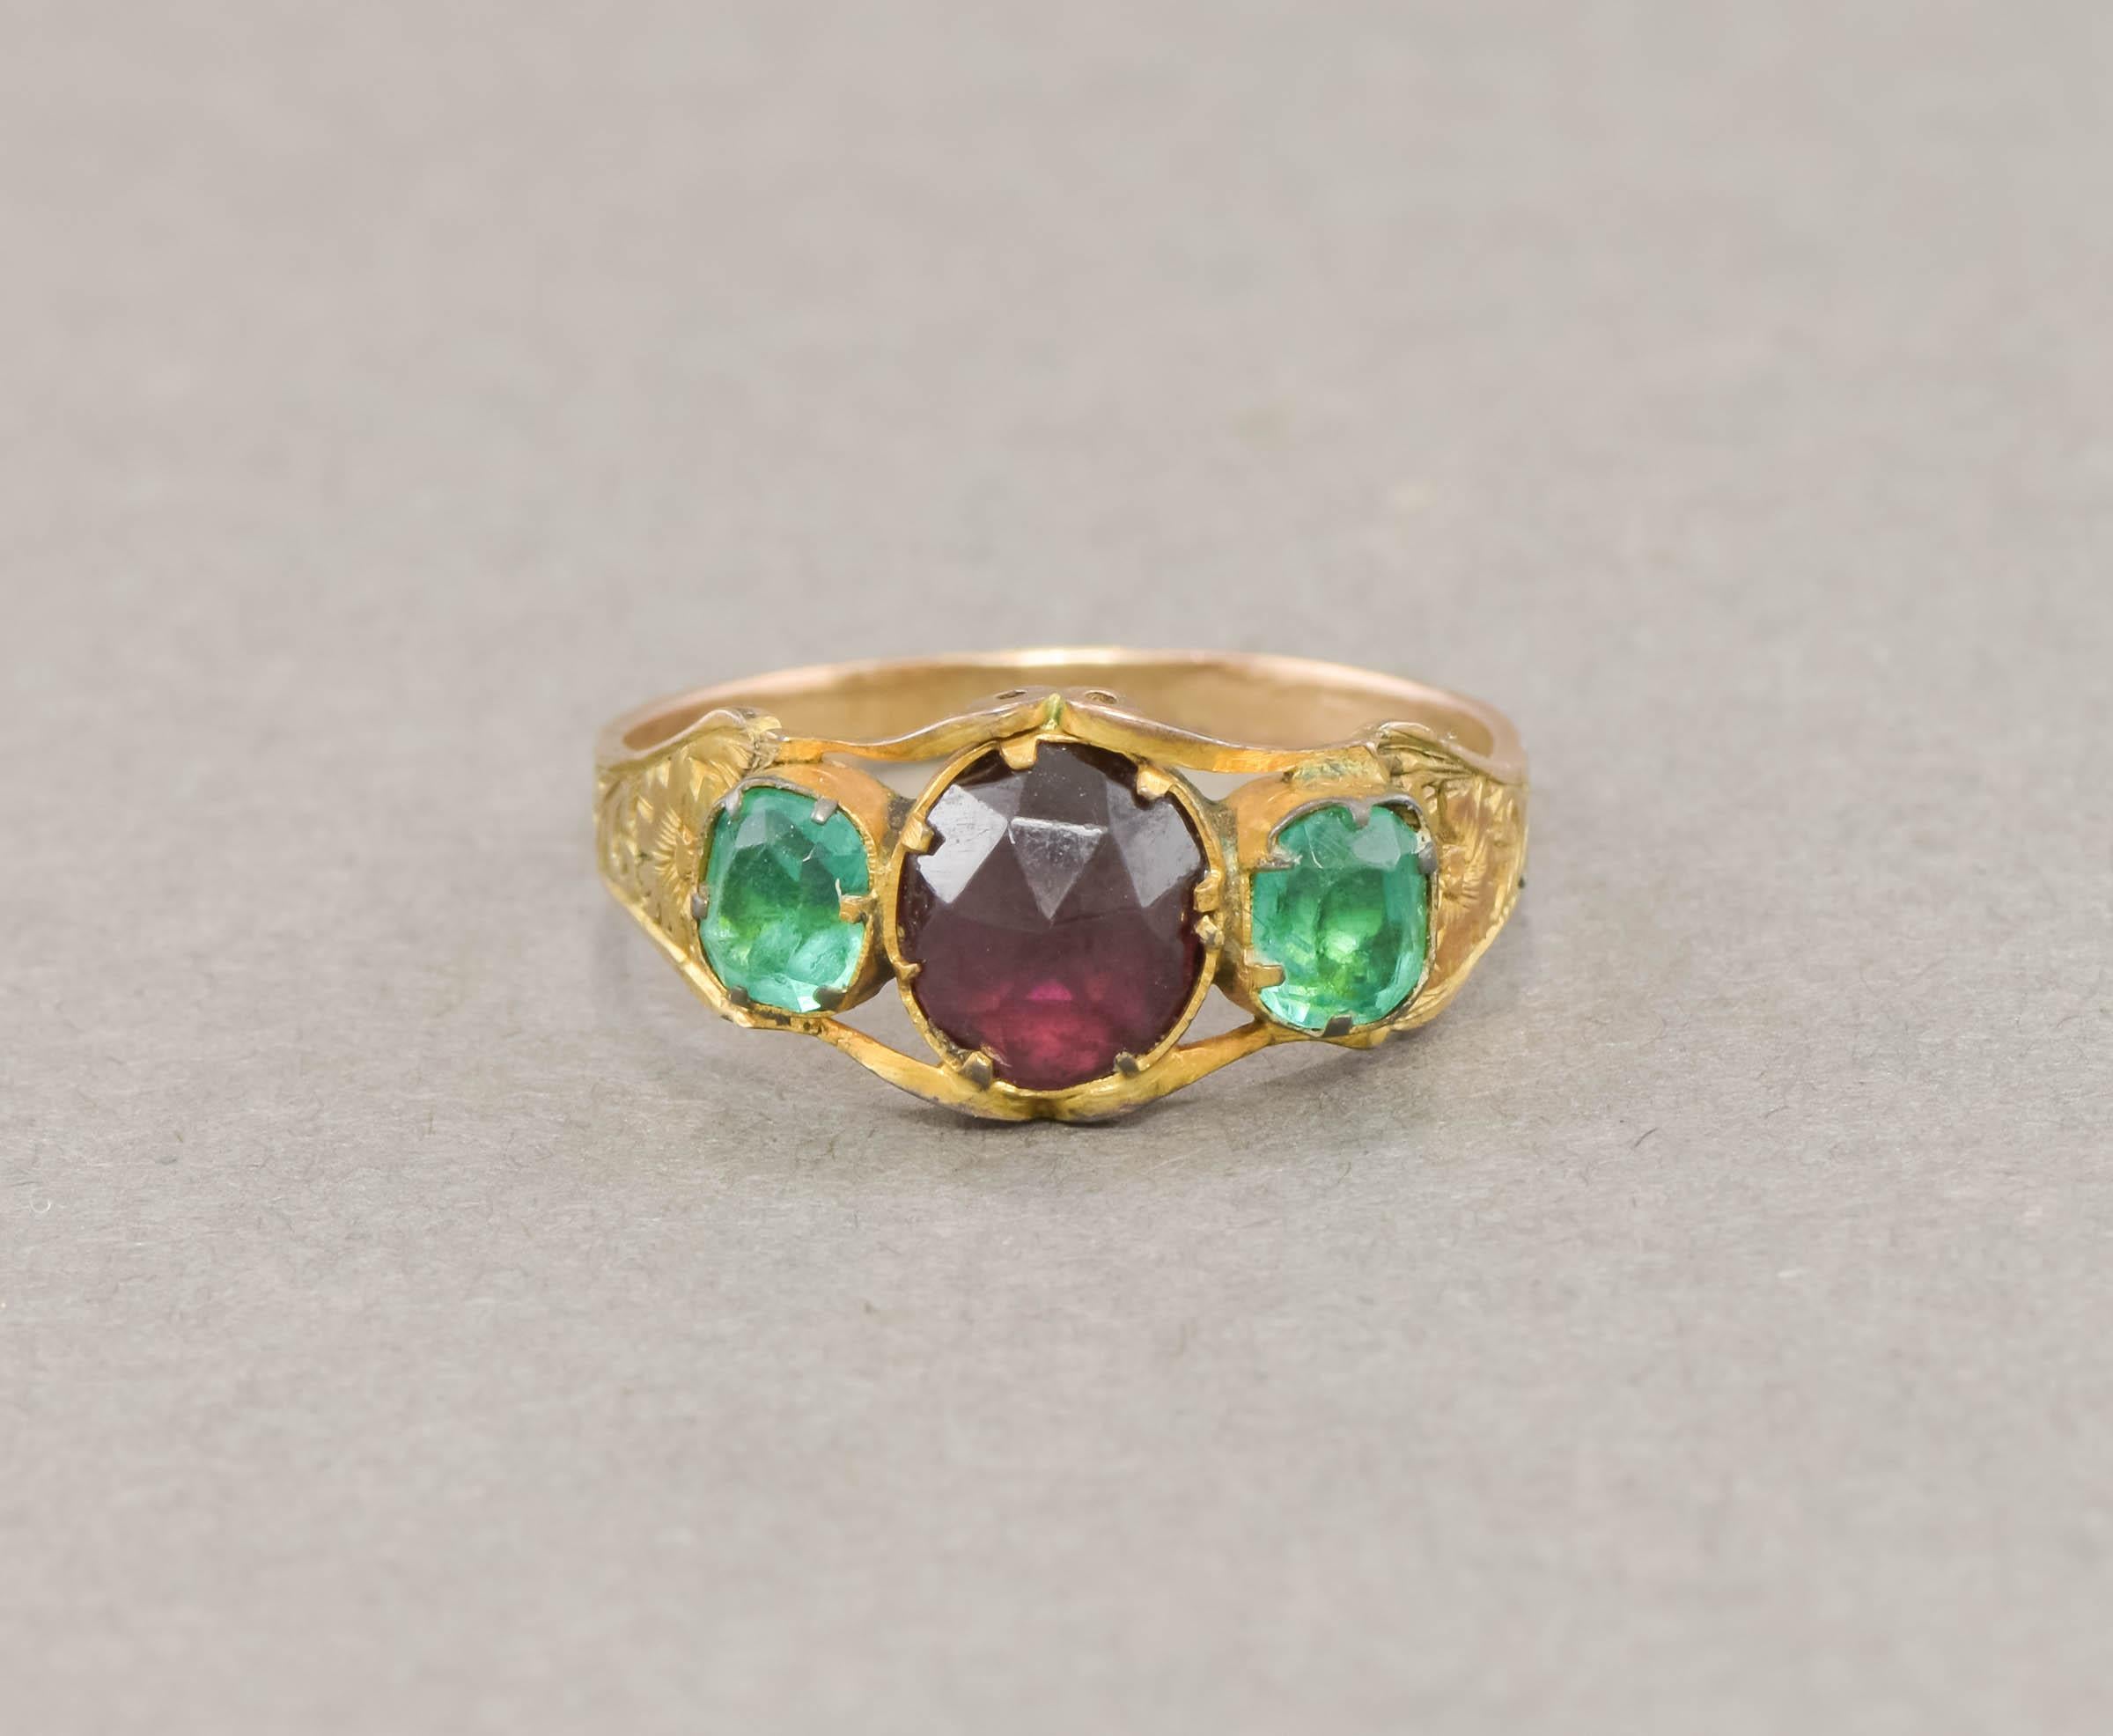 Dieser zierliche Ring aus antikem Granat und Paste vereint wunderbare Farbe und Glanz mit einer komplizierten Blumengravur. Man schätzt, dass sie aus den 1850er Jahren stammt.

Der Ring ist aus 9-karätigem Gold gefertigt (mit geblümtem/vergoldetem